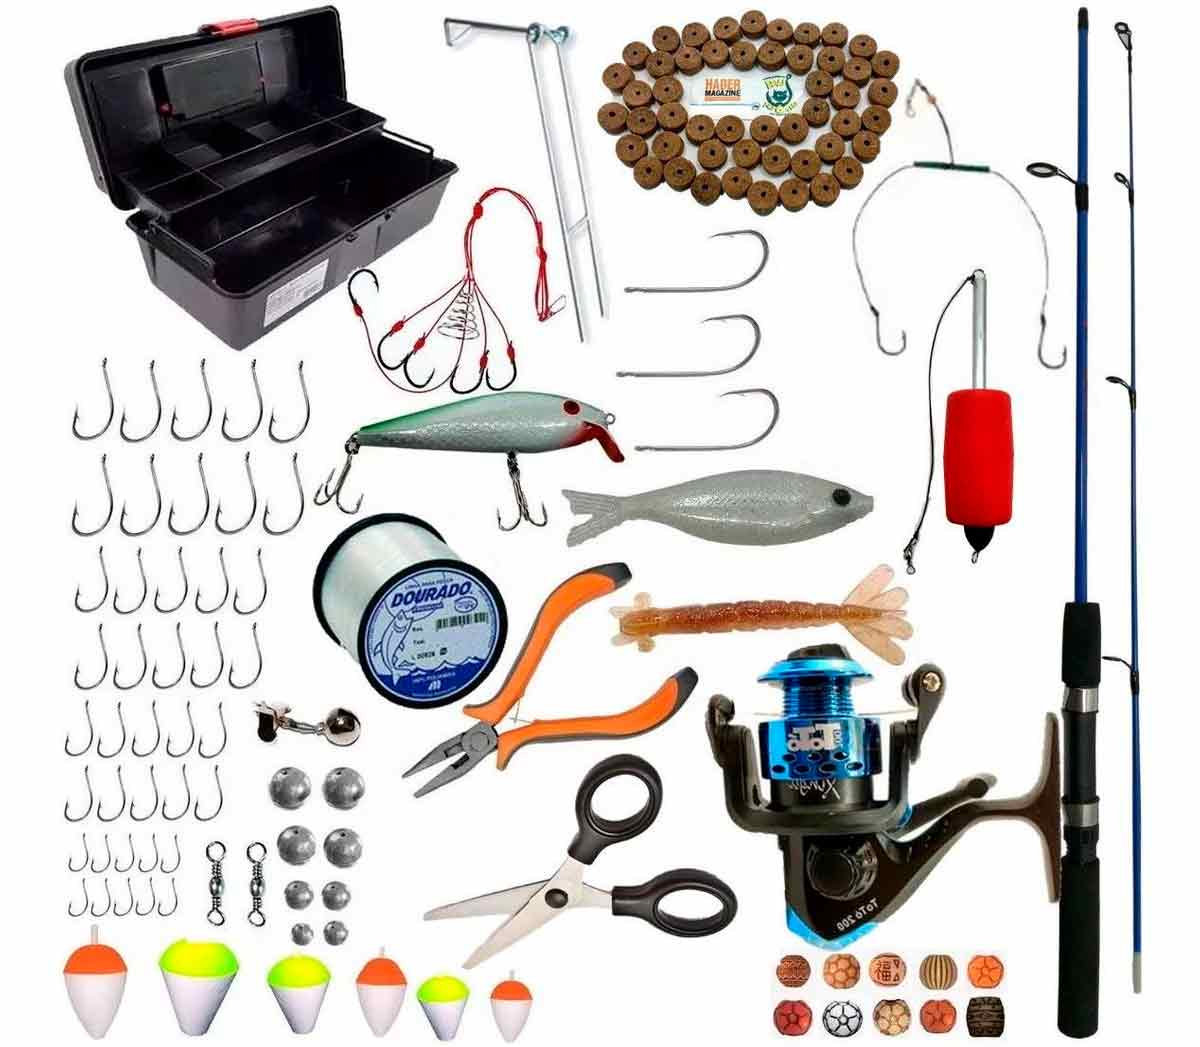 Vários equipamentos para pesca esportiva - vara, molinete, linha, anzóis, chumbadas, bóias, etc.